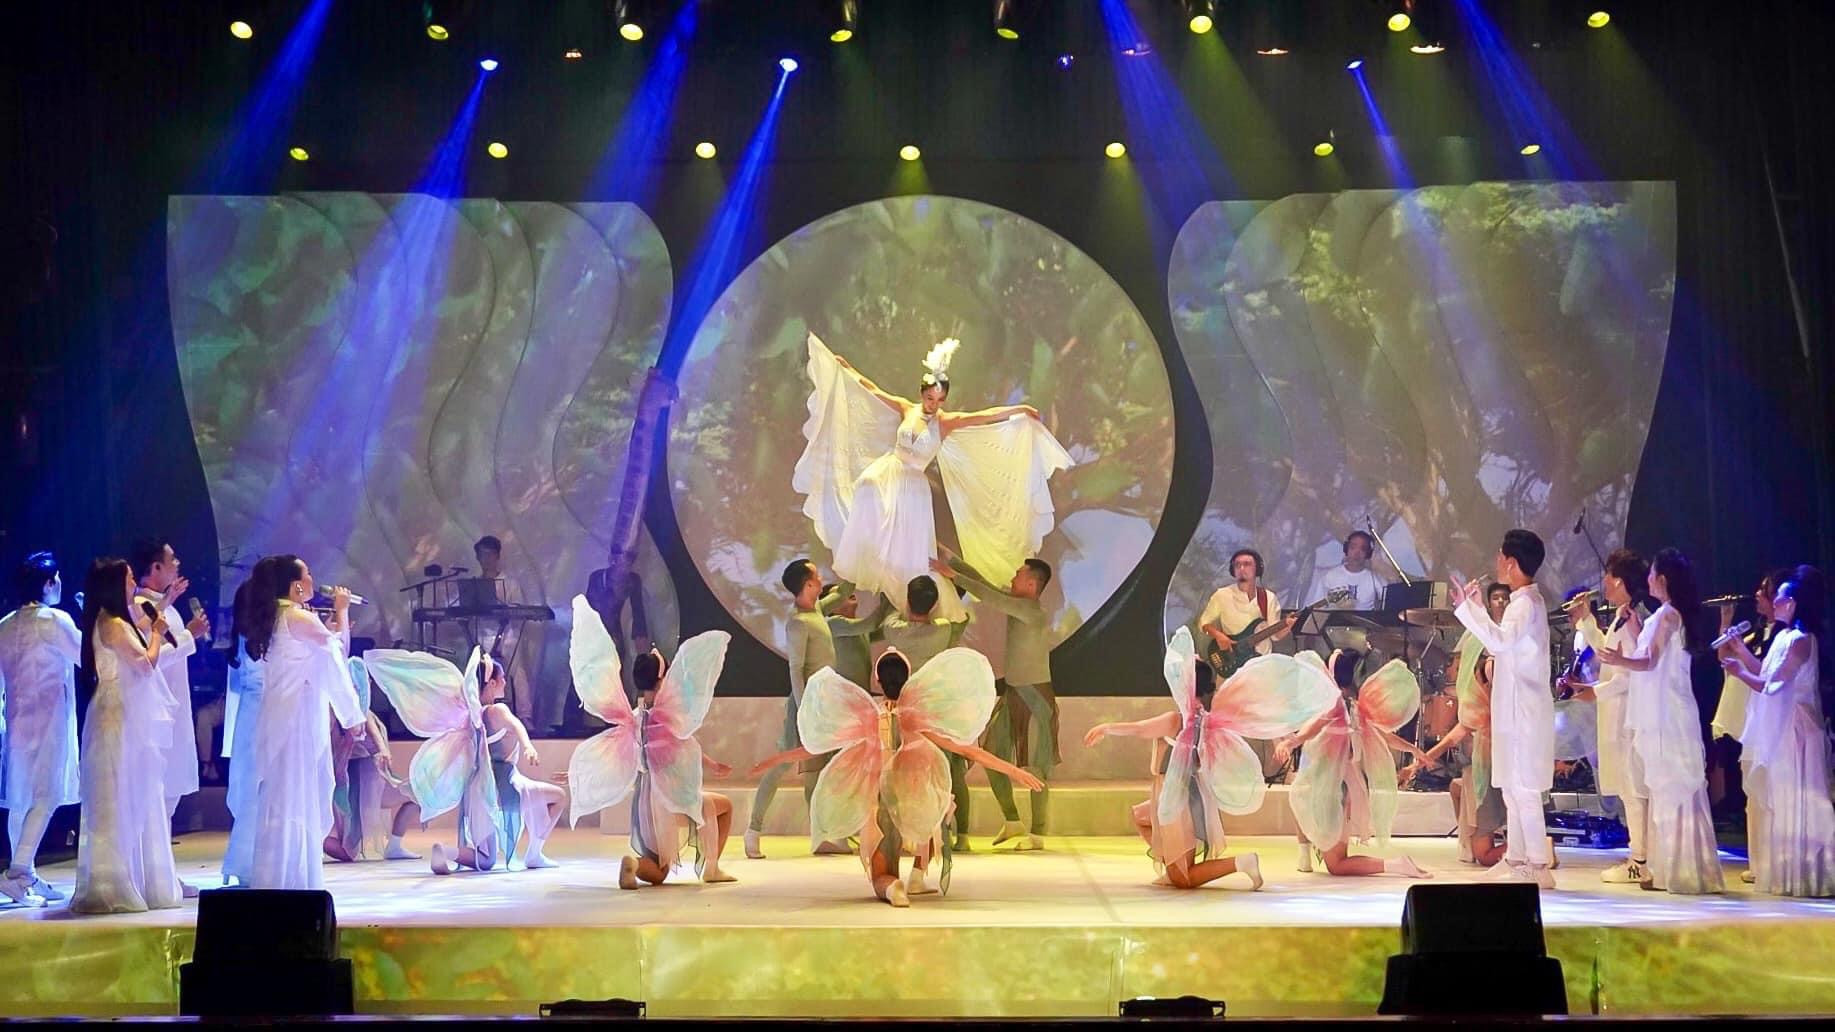 Nhà hát Ca múa nhạc Thăng Long đoạt Huy chương vàng Liên hoan Ca múa nhạc toàn quốc